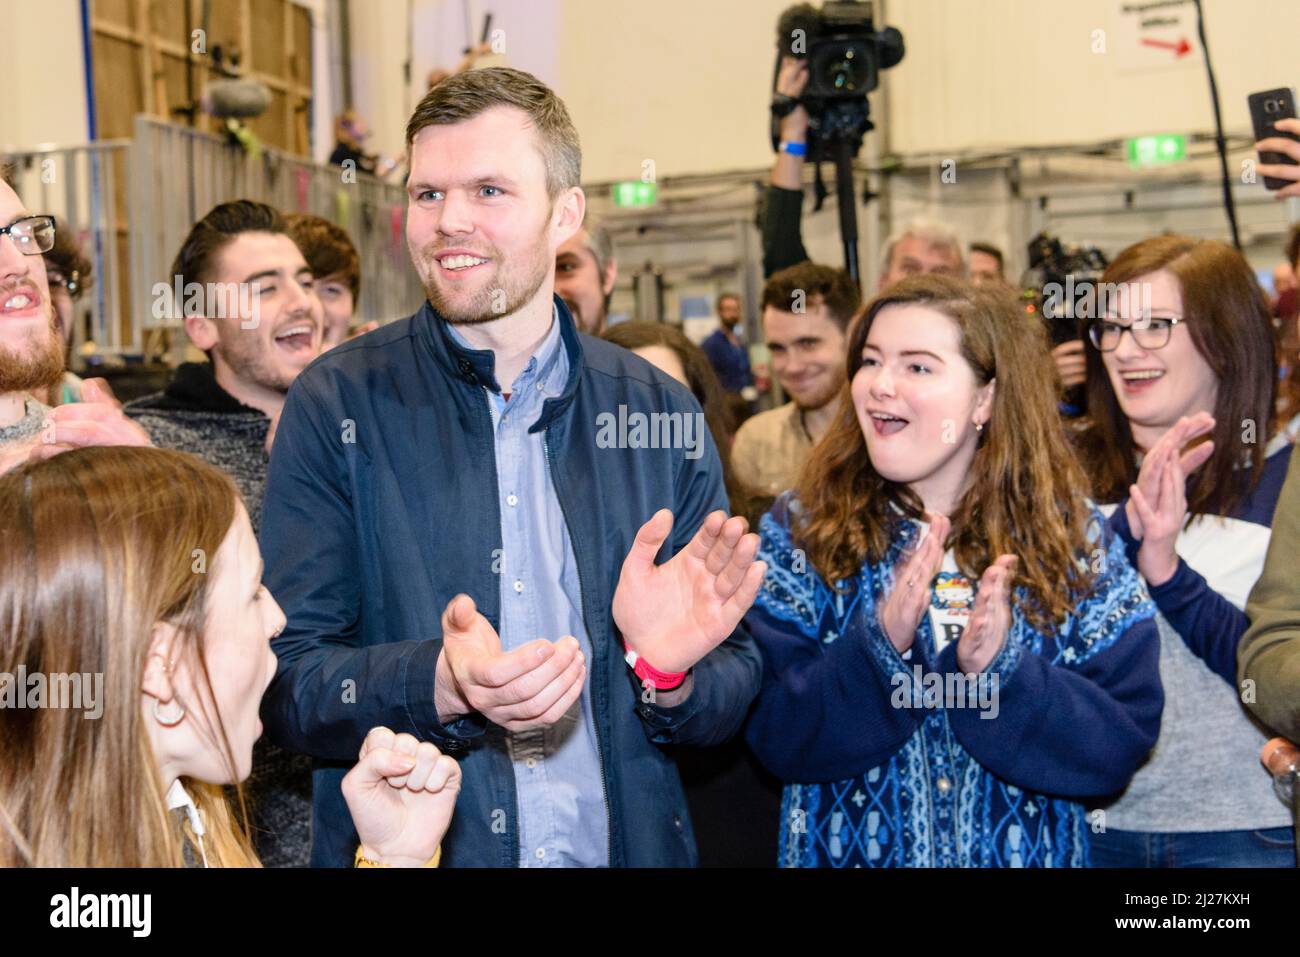 03/03/2017, Belfast Irlanda del Nord. Gerry Carroll (persone prima del profitto) e i sostenitori incoraggiano e plaudono quando è eletto all'Assemblea dell'Irlanda del Nord. Foto Stock